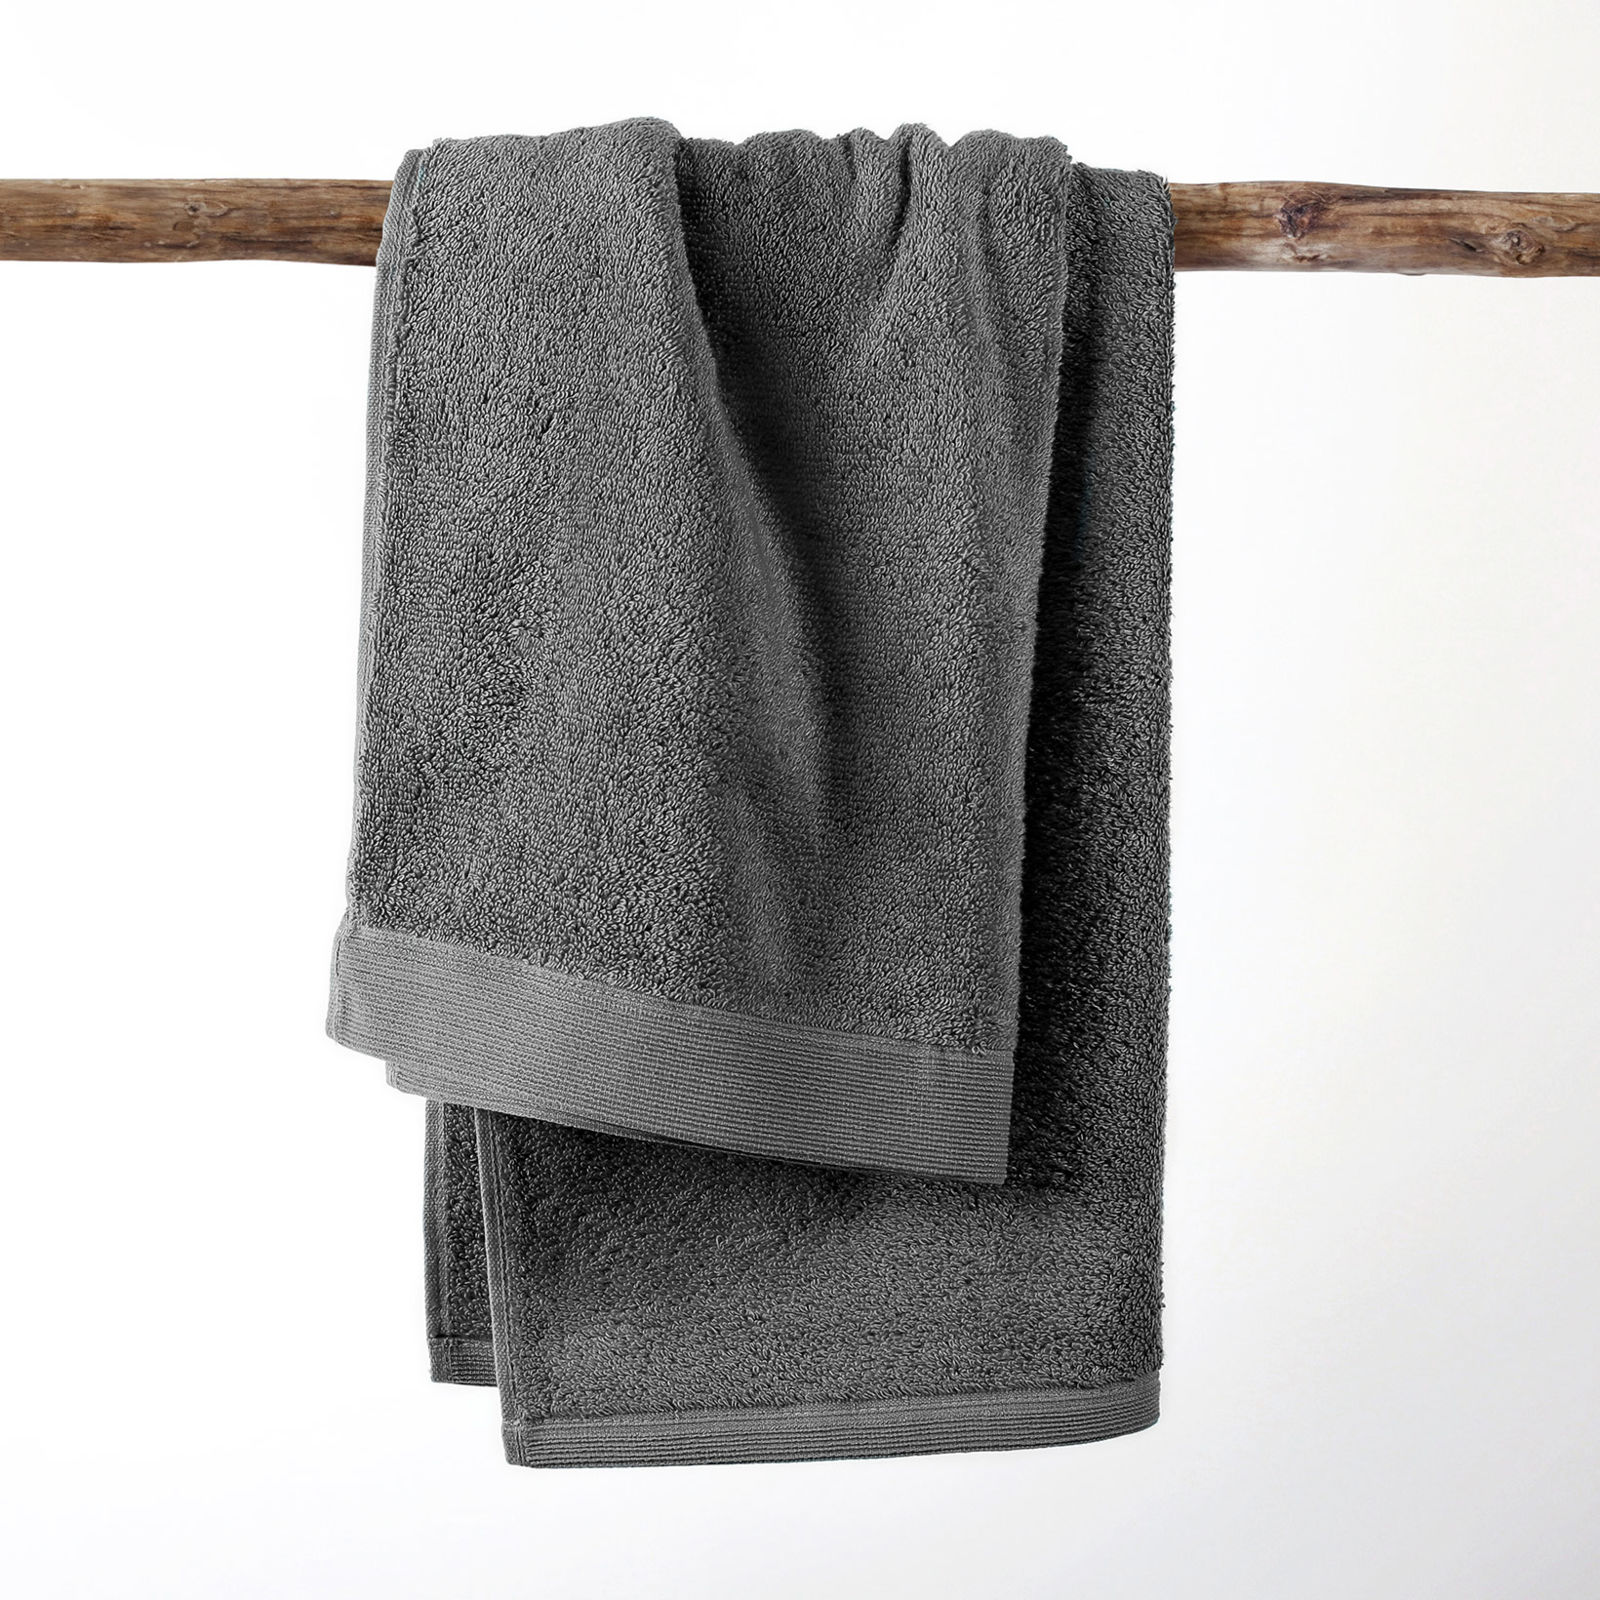 Modalový uterák/osuška s prírodným vláknom - tmavo sivý